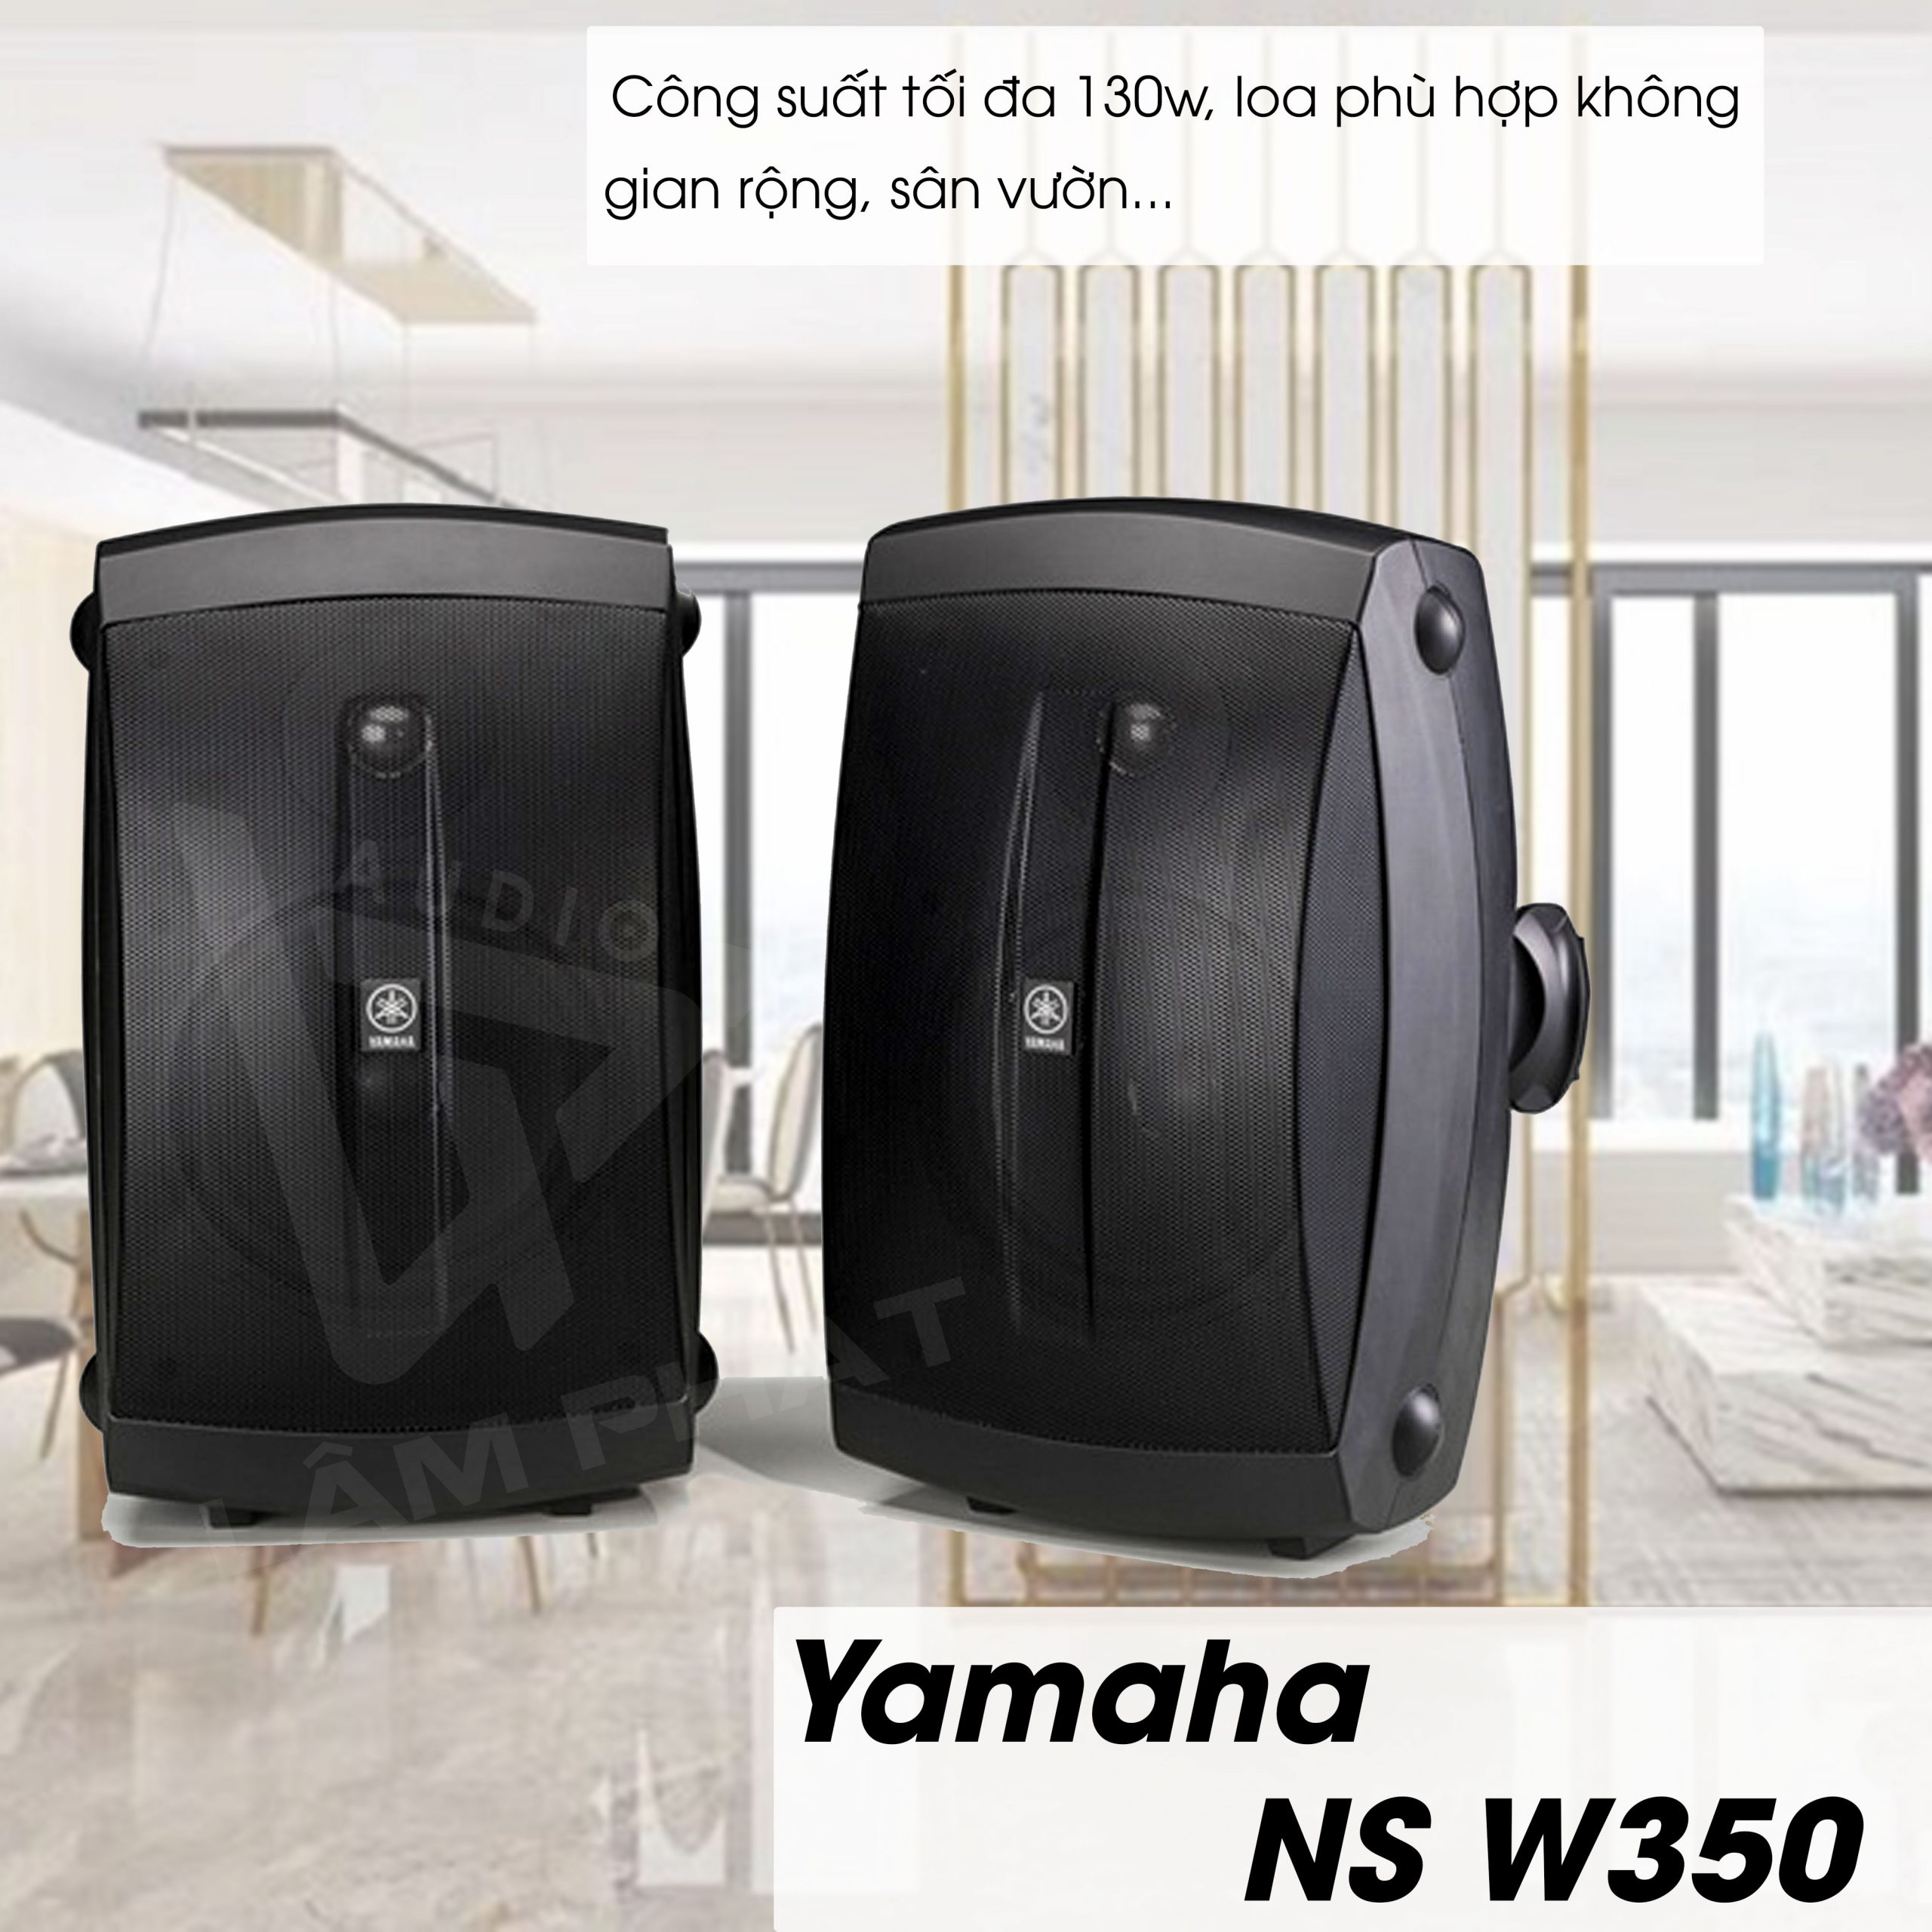 Yamaha NS W350 Loa Đôi Treo Tường Chất Lượng